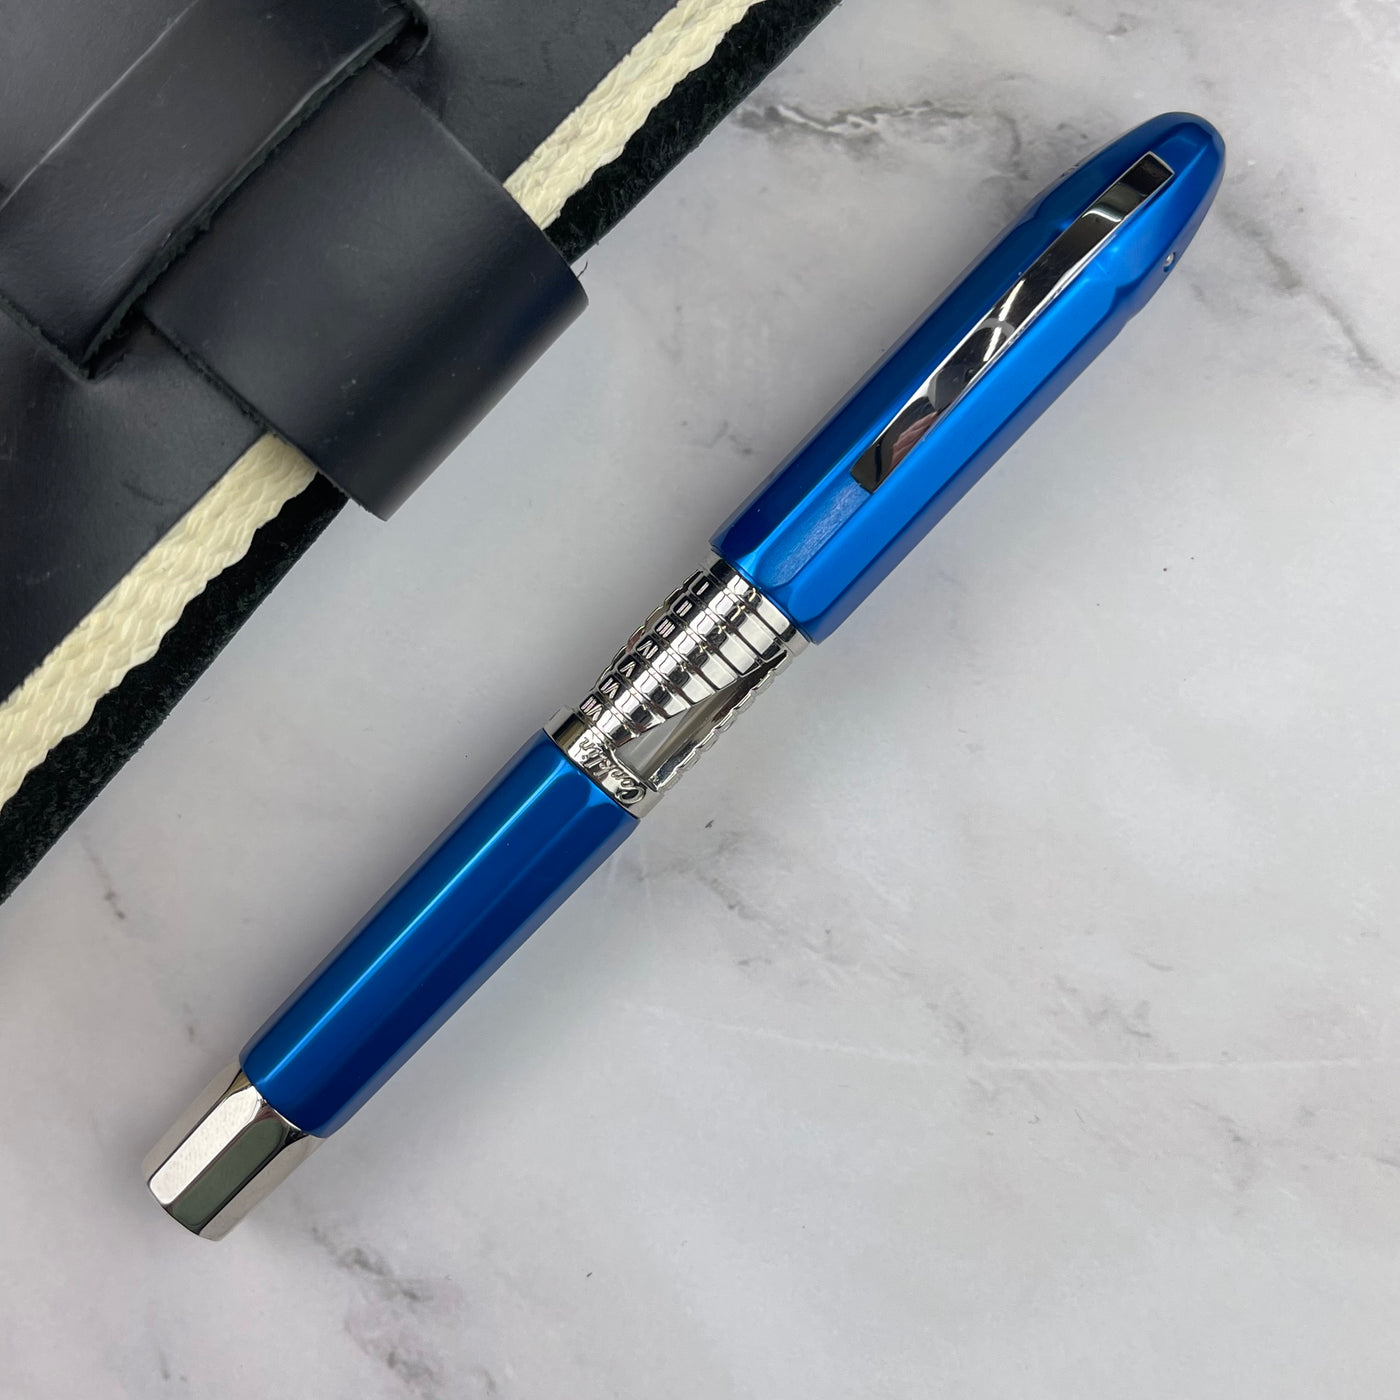 Conklin Nozac Classic 125 Anniversary Fountain Pen - Blue / Chrome (Limited Edition)